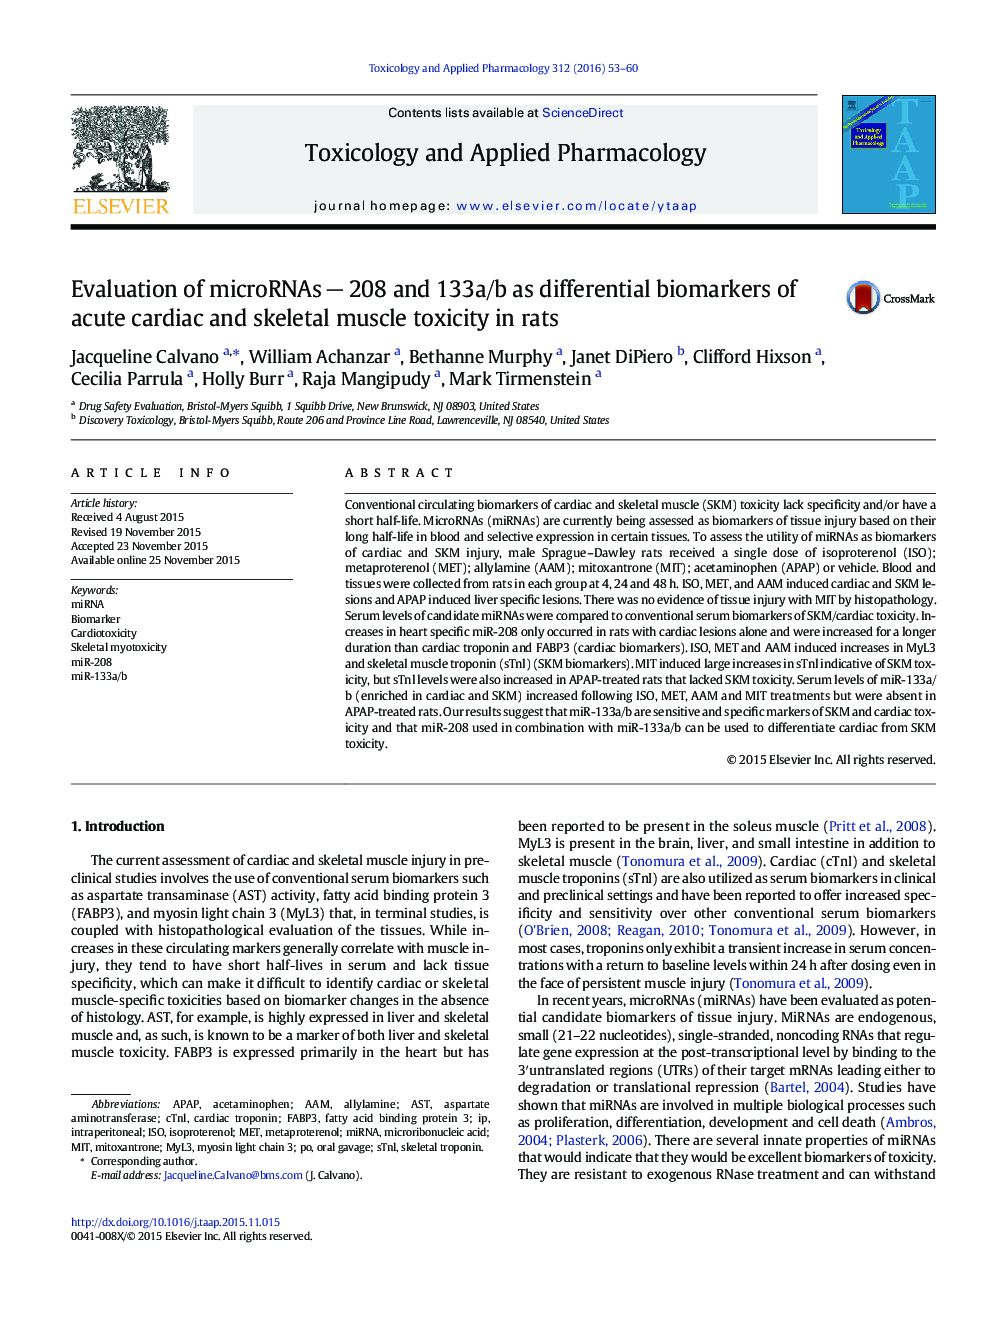 Evaluation of microRNAs â 208 and 133a/b as differential biomarkers of acute cardiac and skeletal muscle toxicity in rats